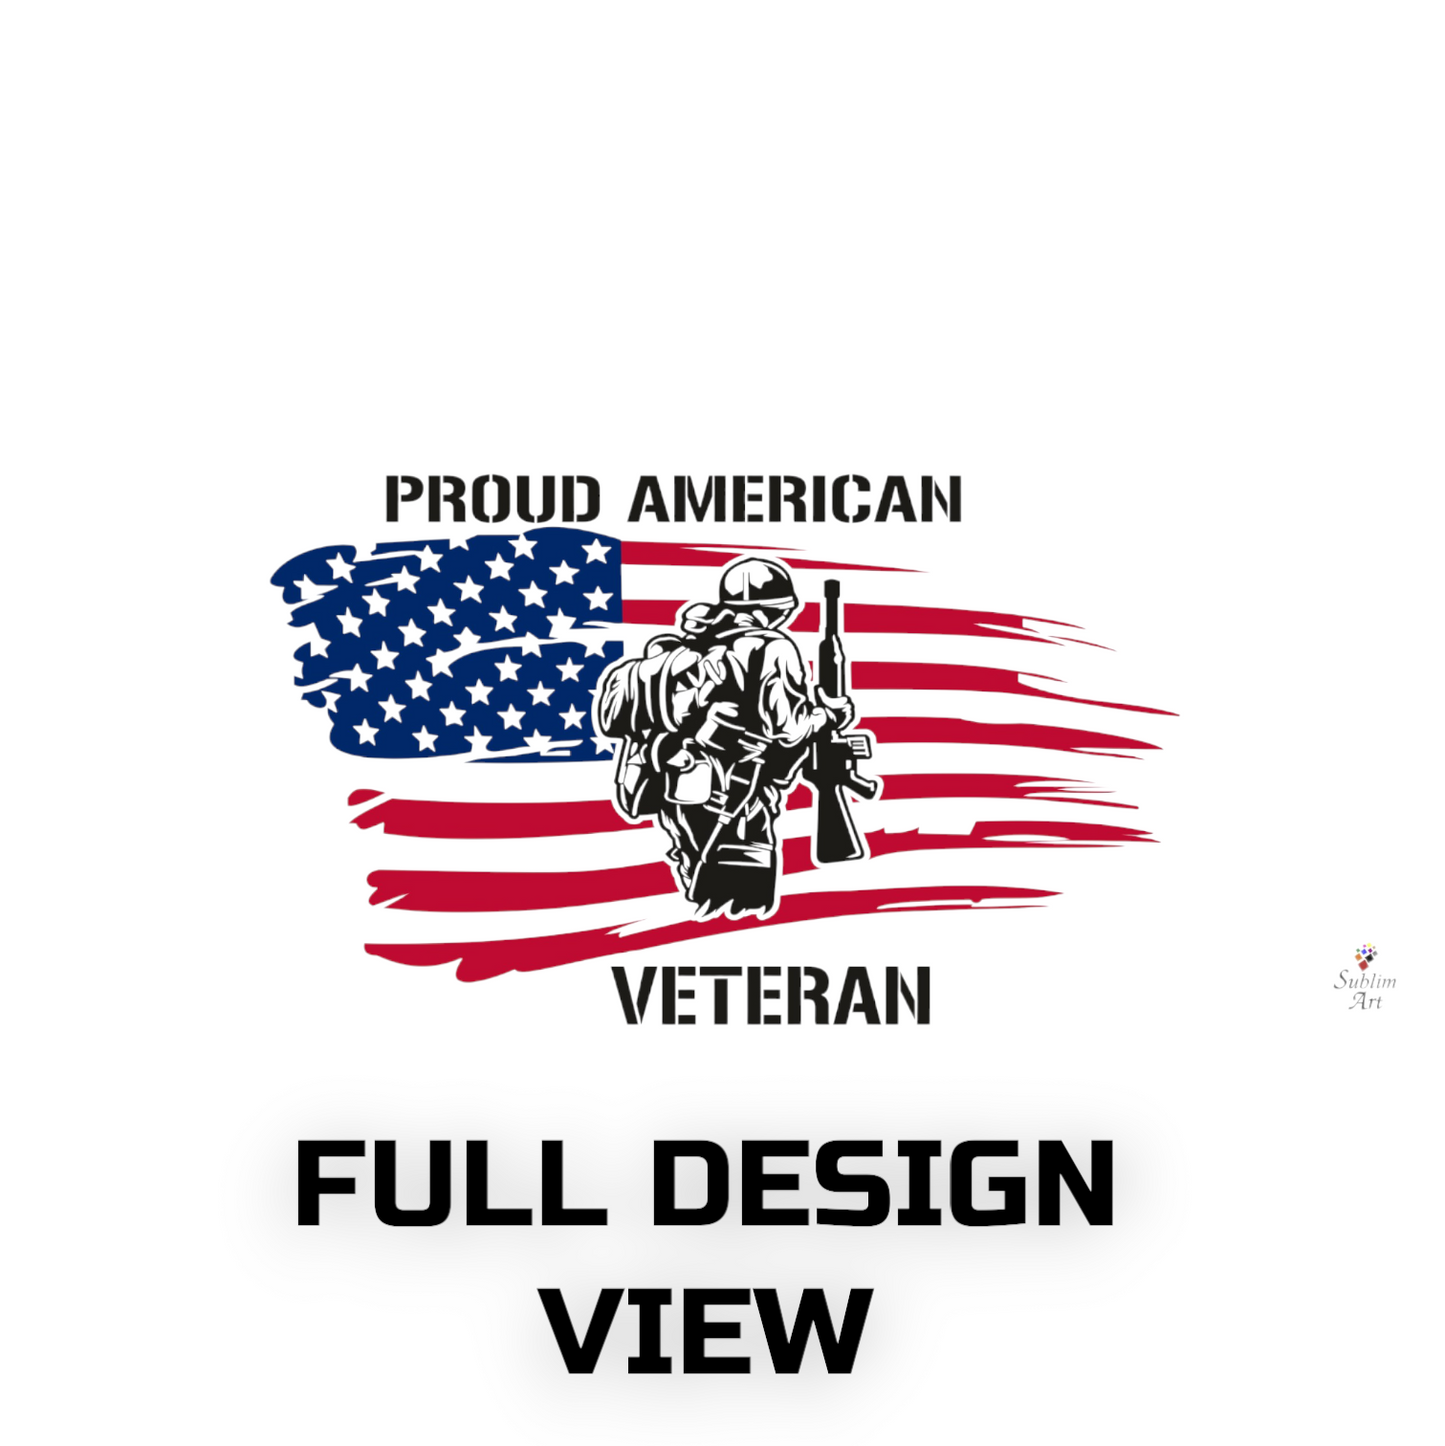 SUBLIMART: Veteran - Mug 'Proud Daughter of Veteran' (Design #16)